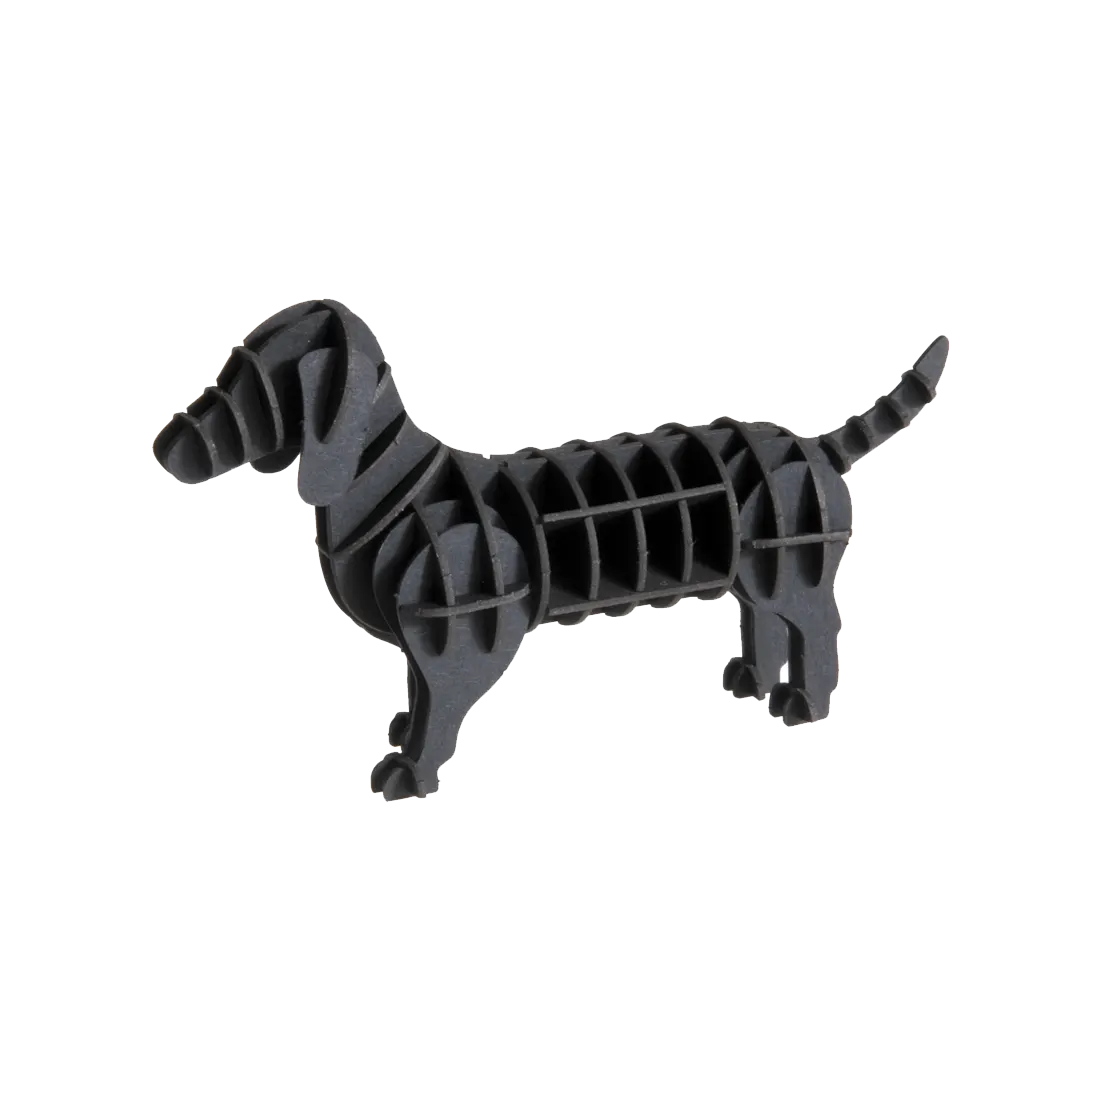 3D Papiermodell / Hund